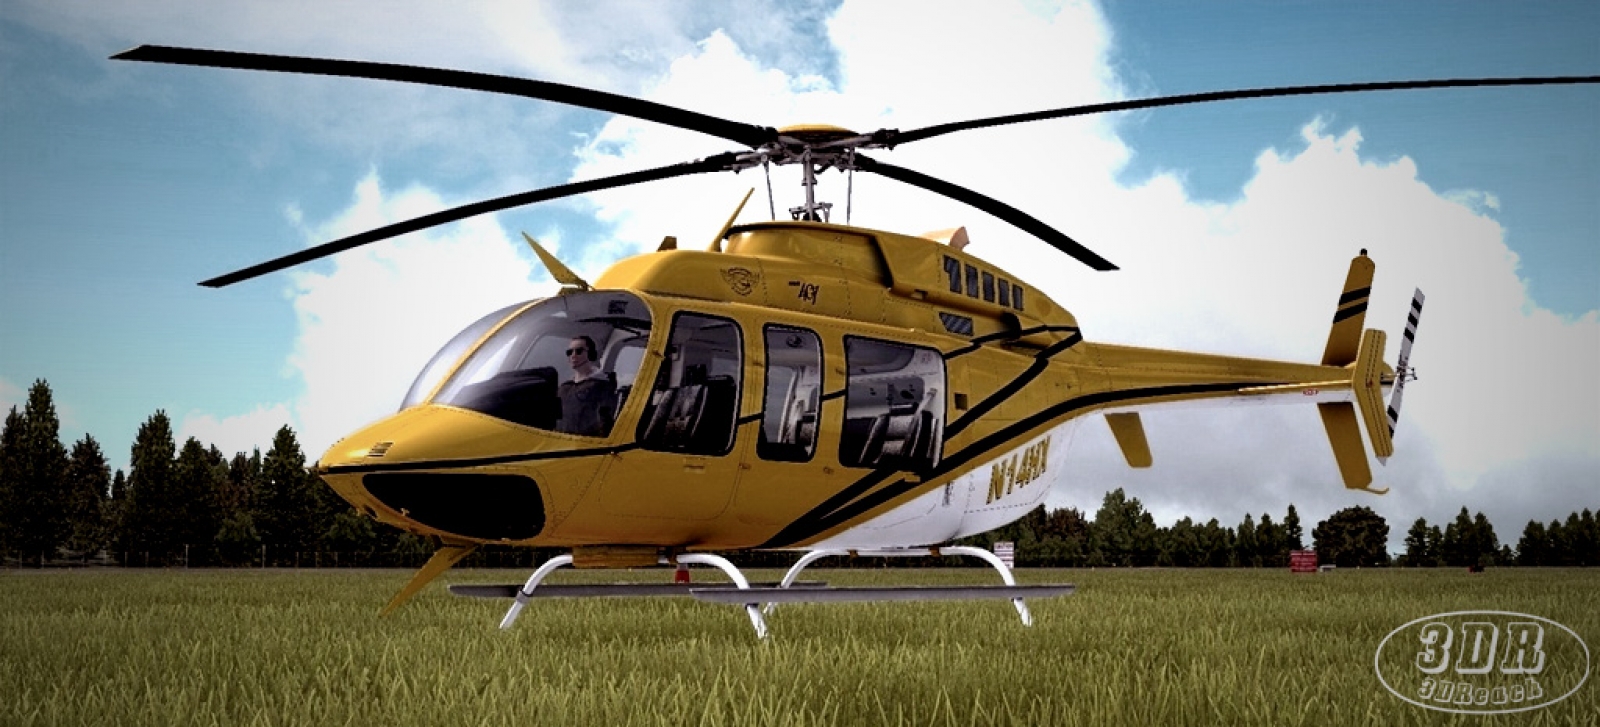 Bell-407-13.jpg